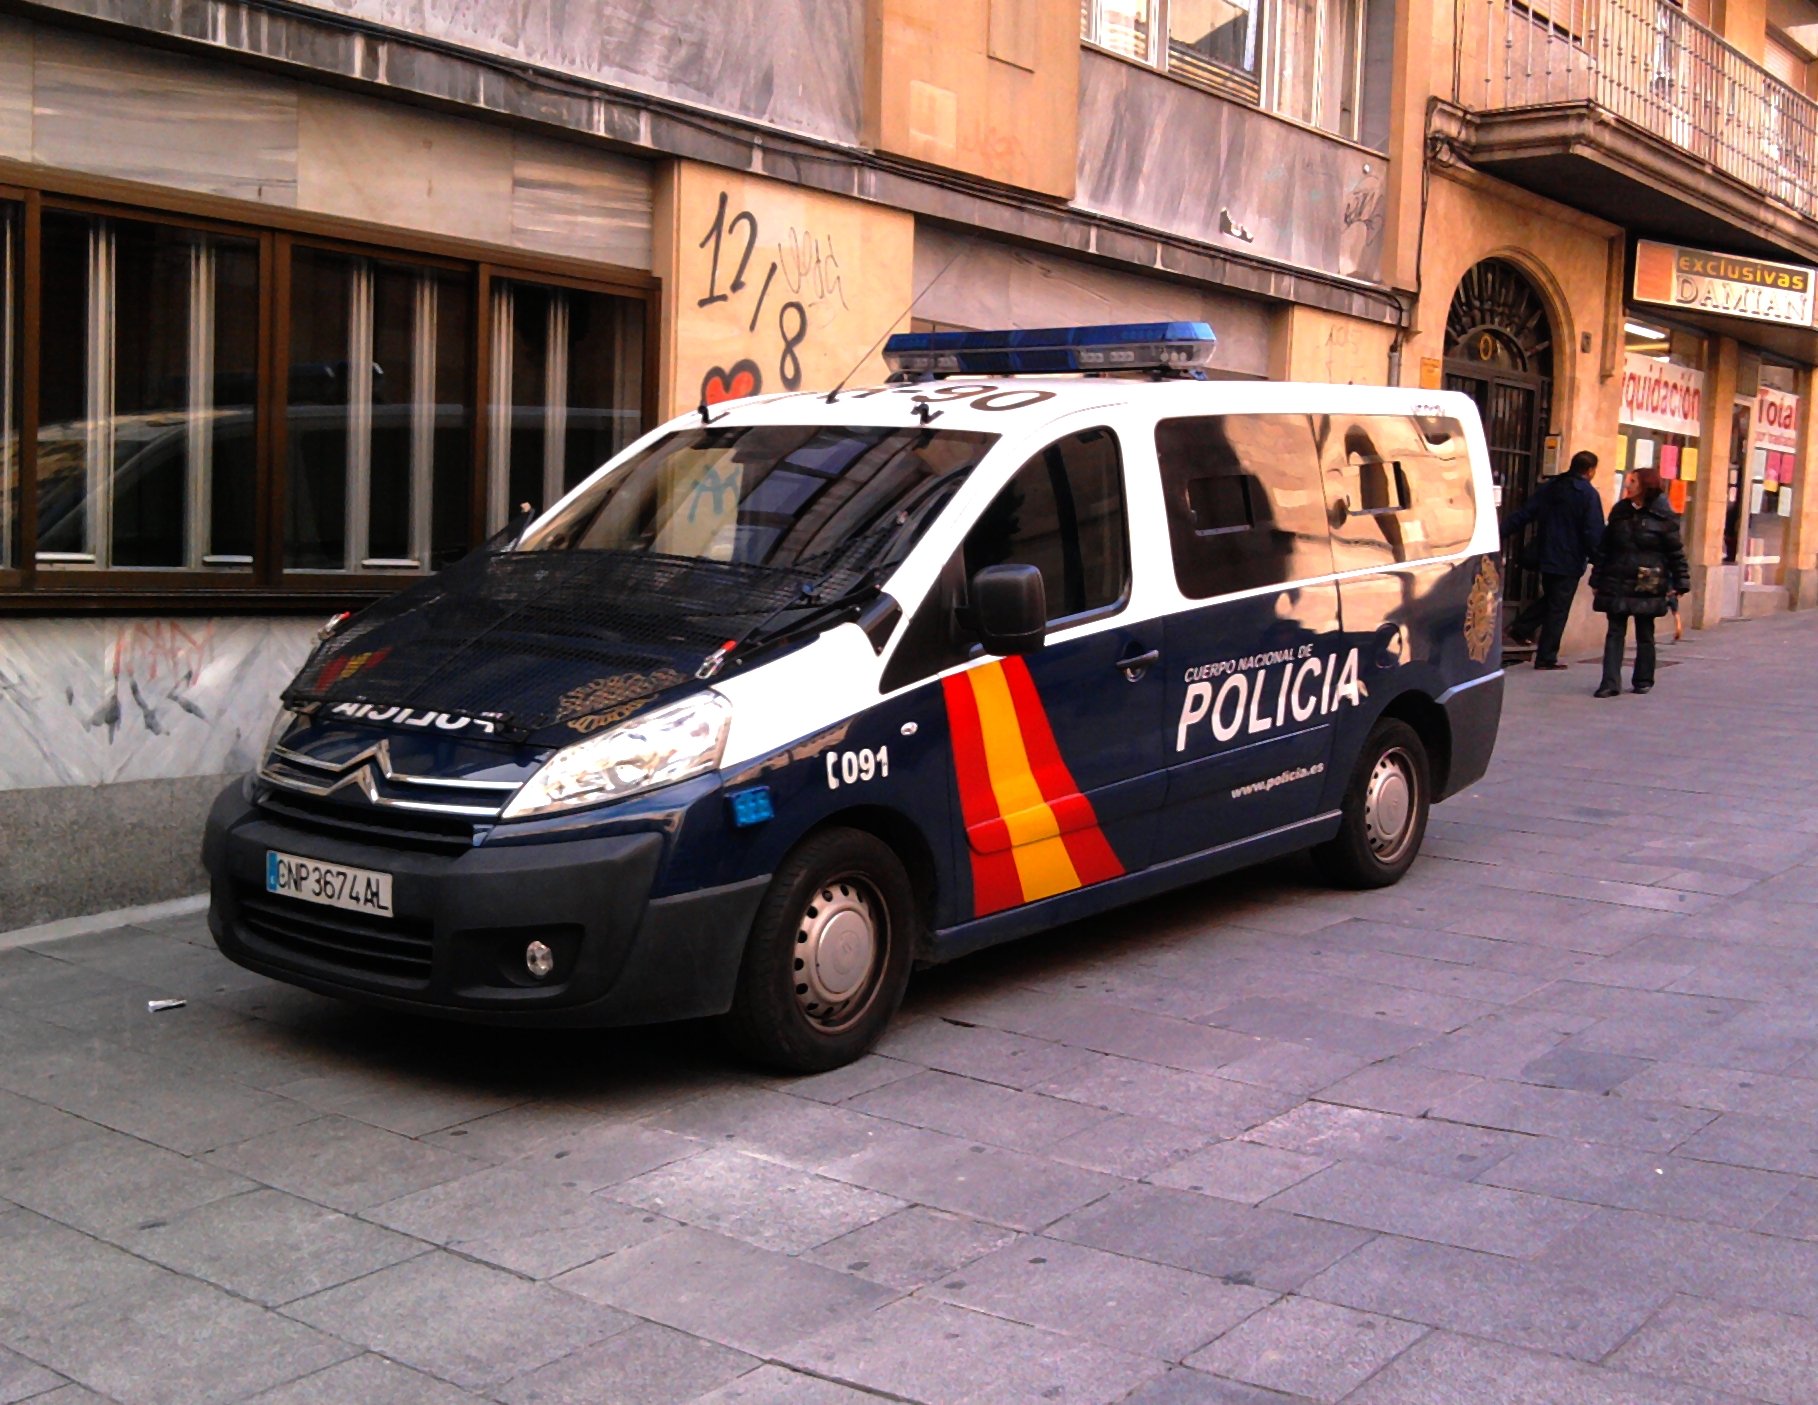 La policia espanyola no vol venir a Catalunya